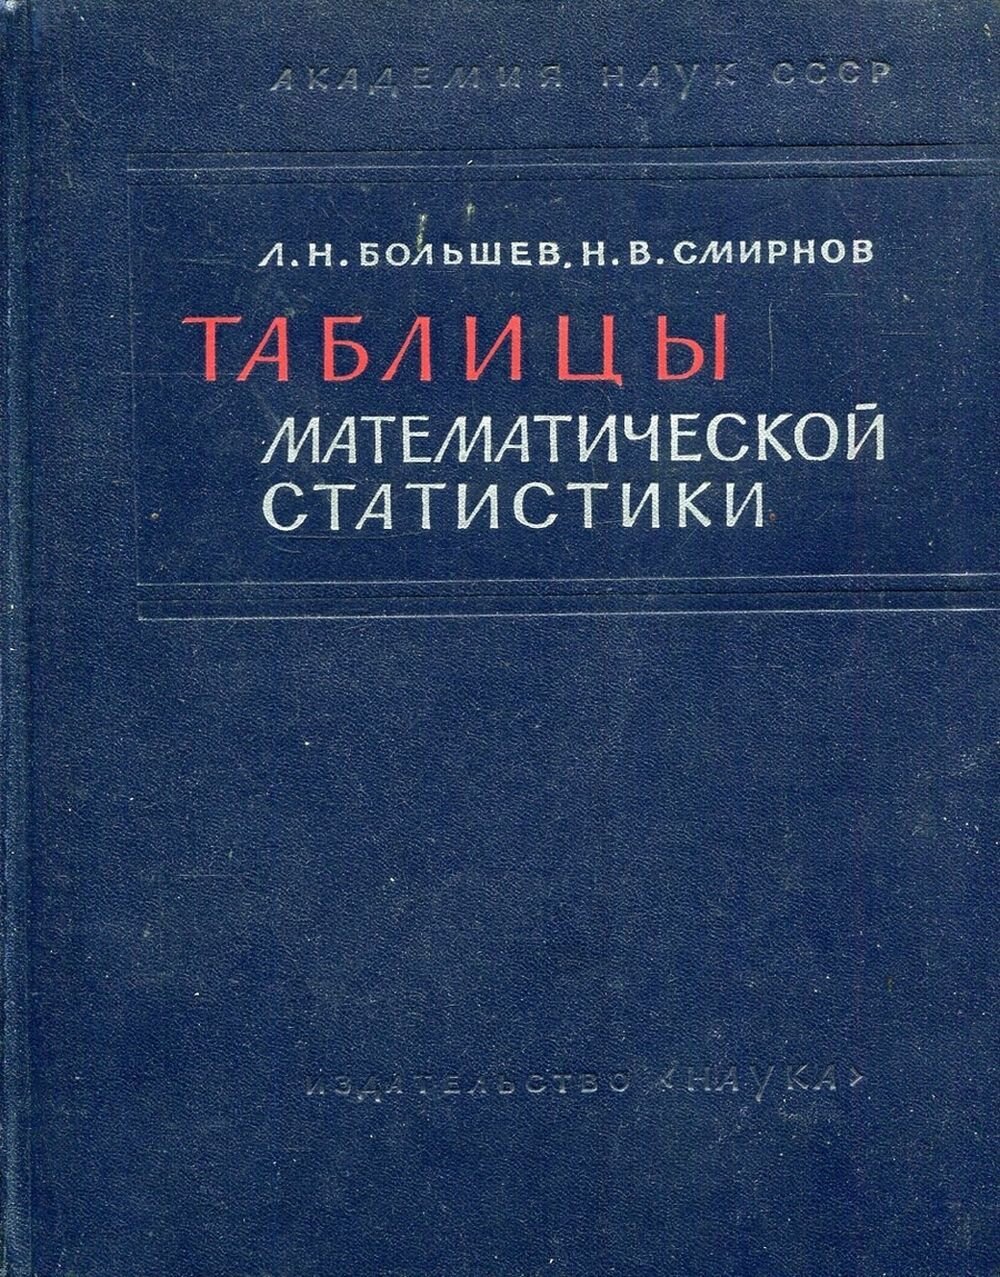 Книга "Таблицы математической статистики". 1965